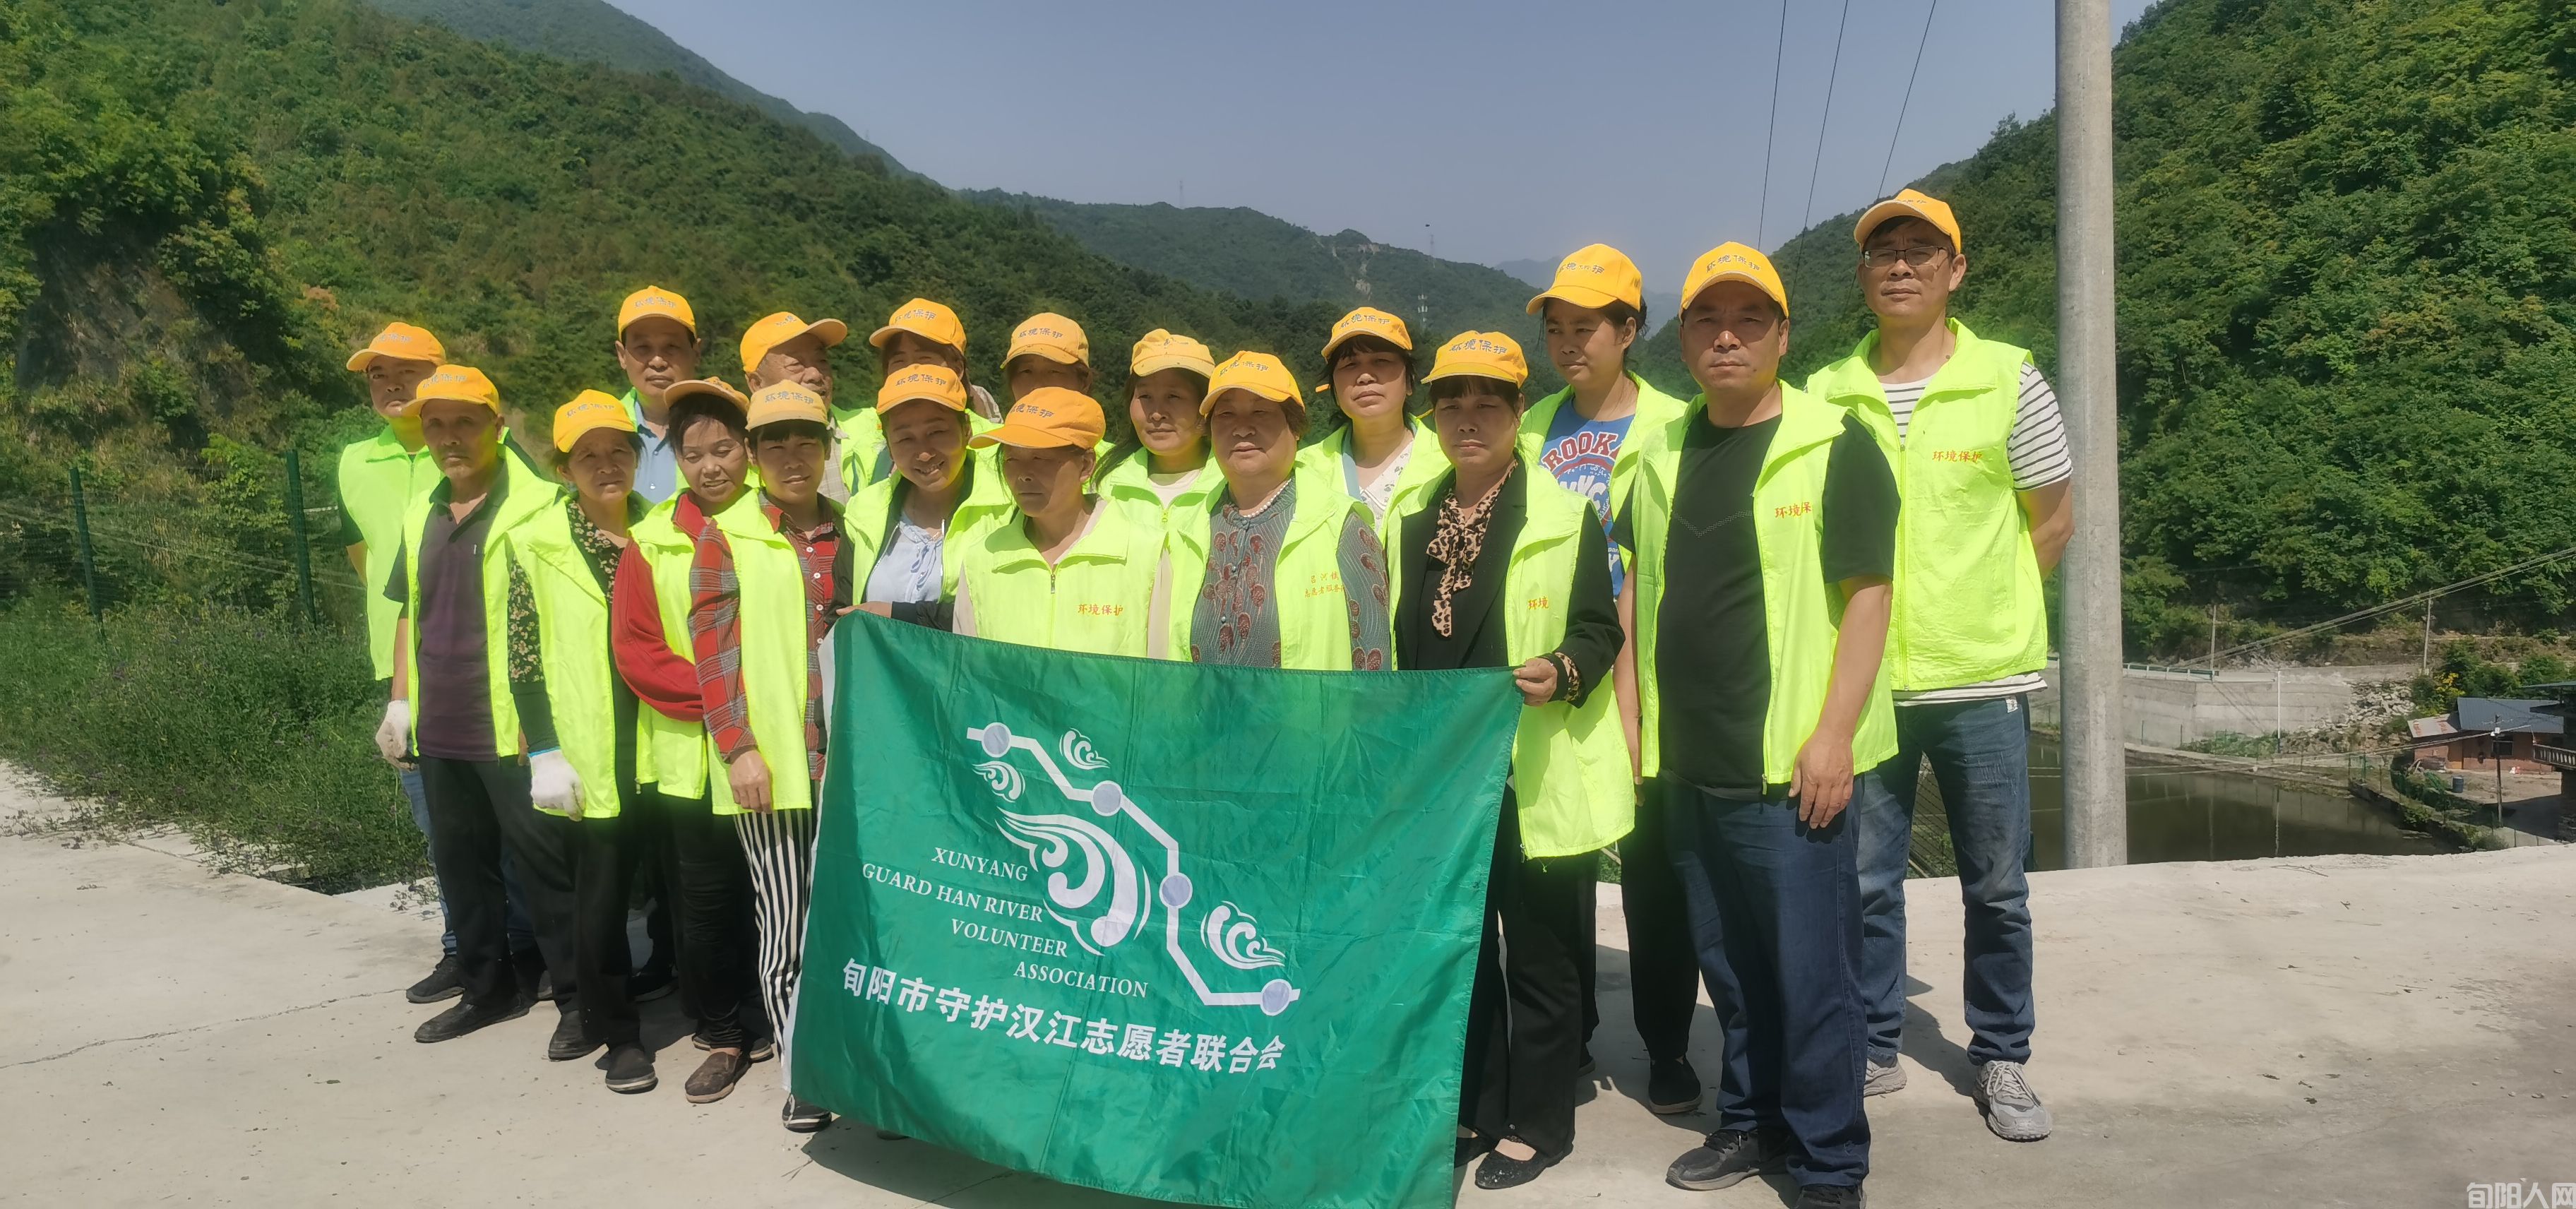 保护青山绿水在行动 —旬阳市守护汉江志愿者联合会活动纪实   文/常正安